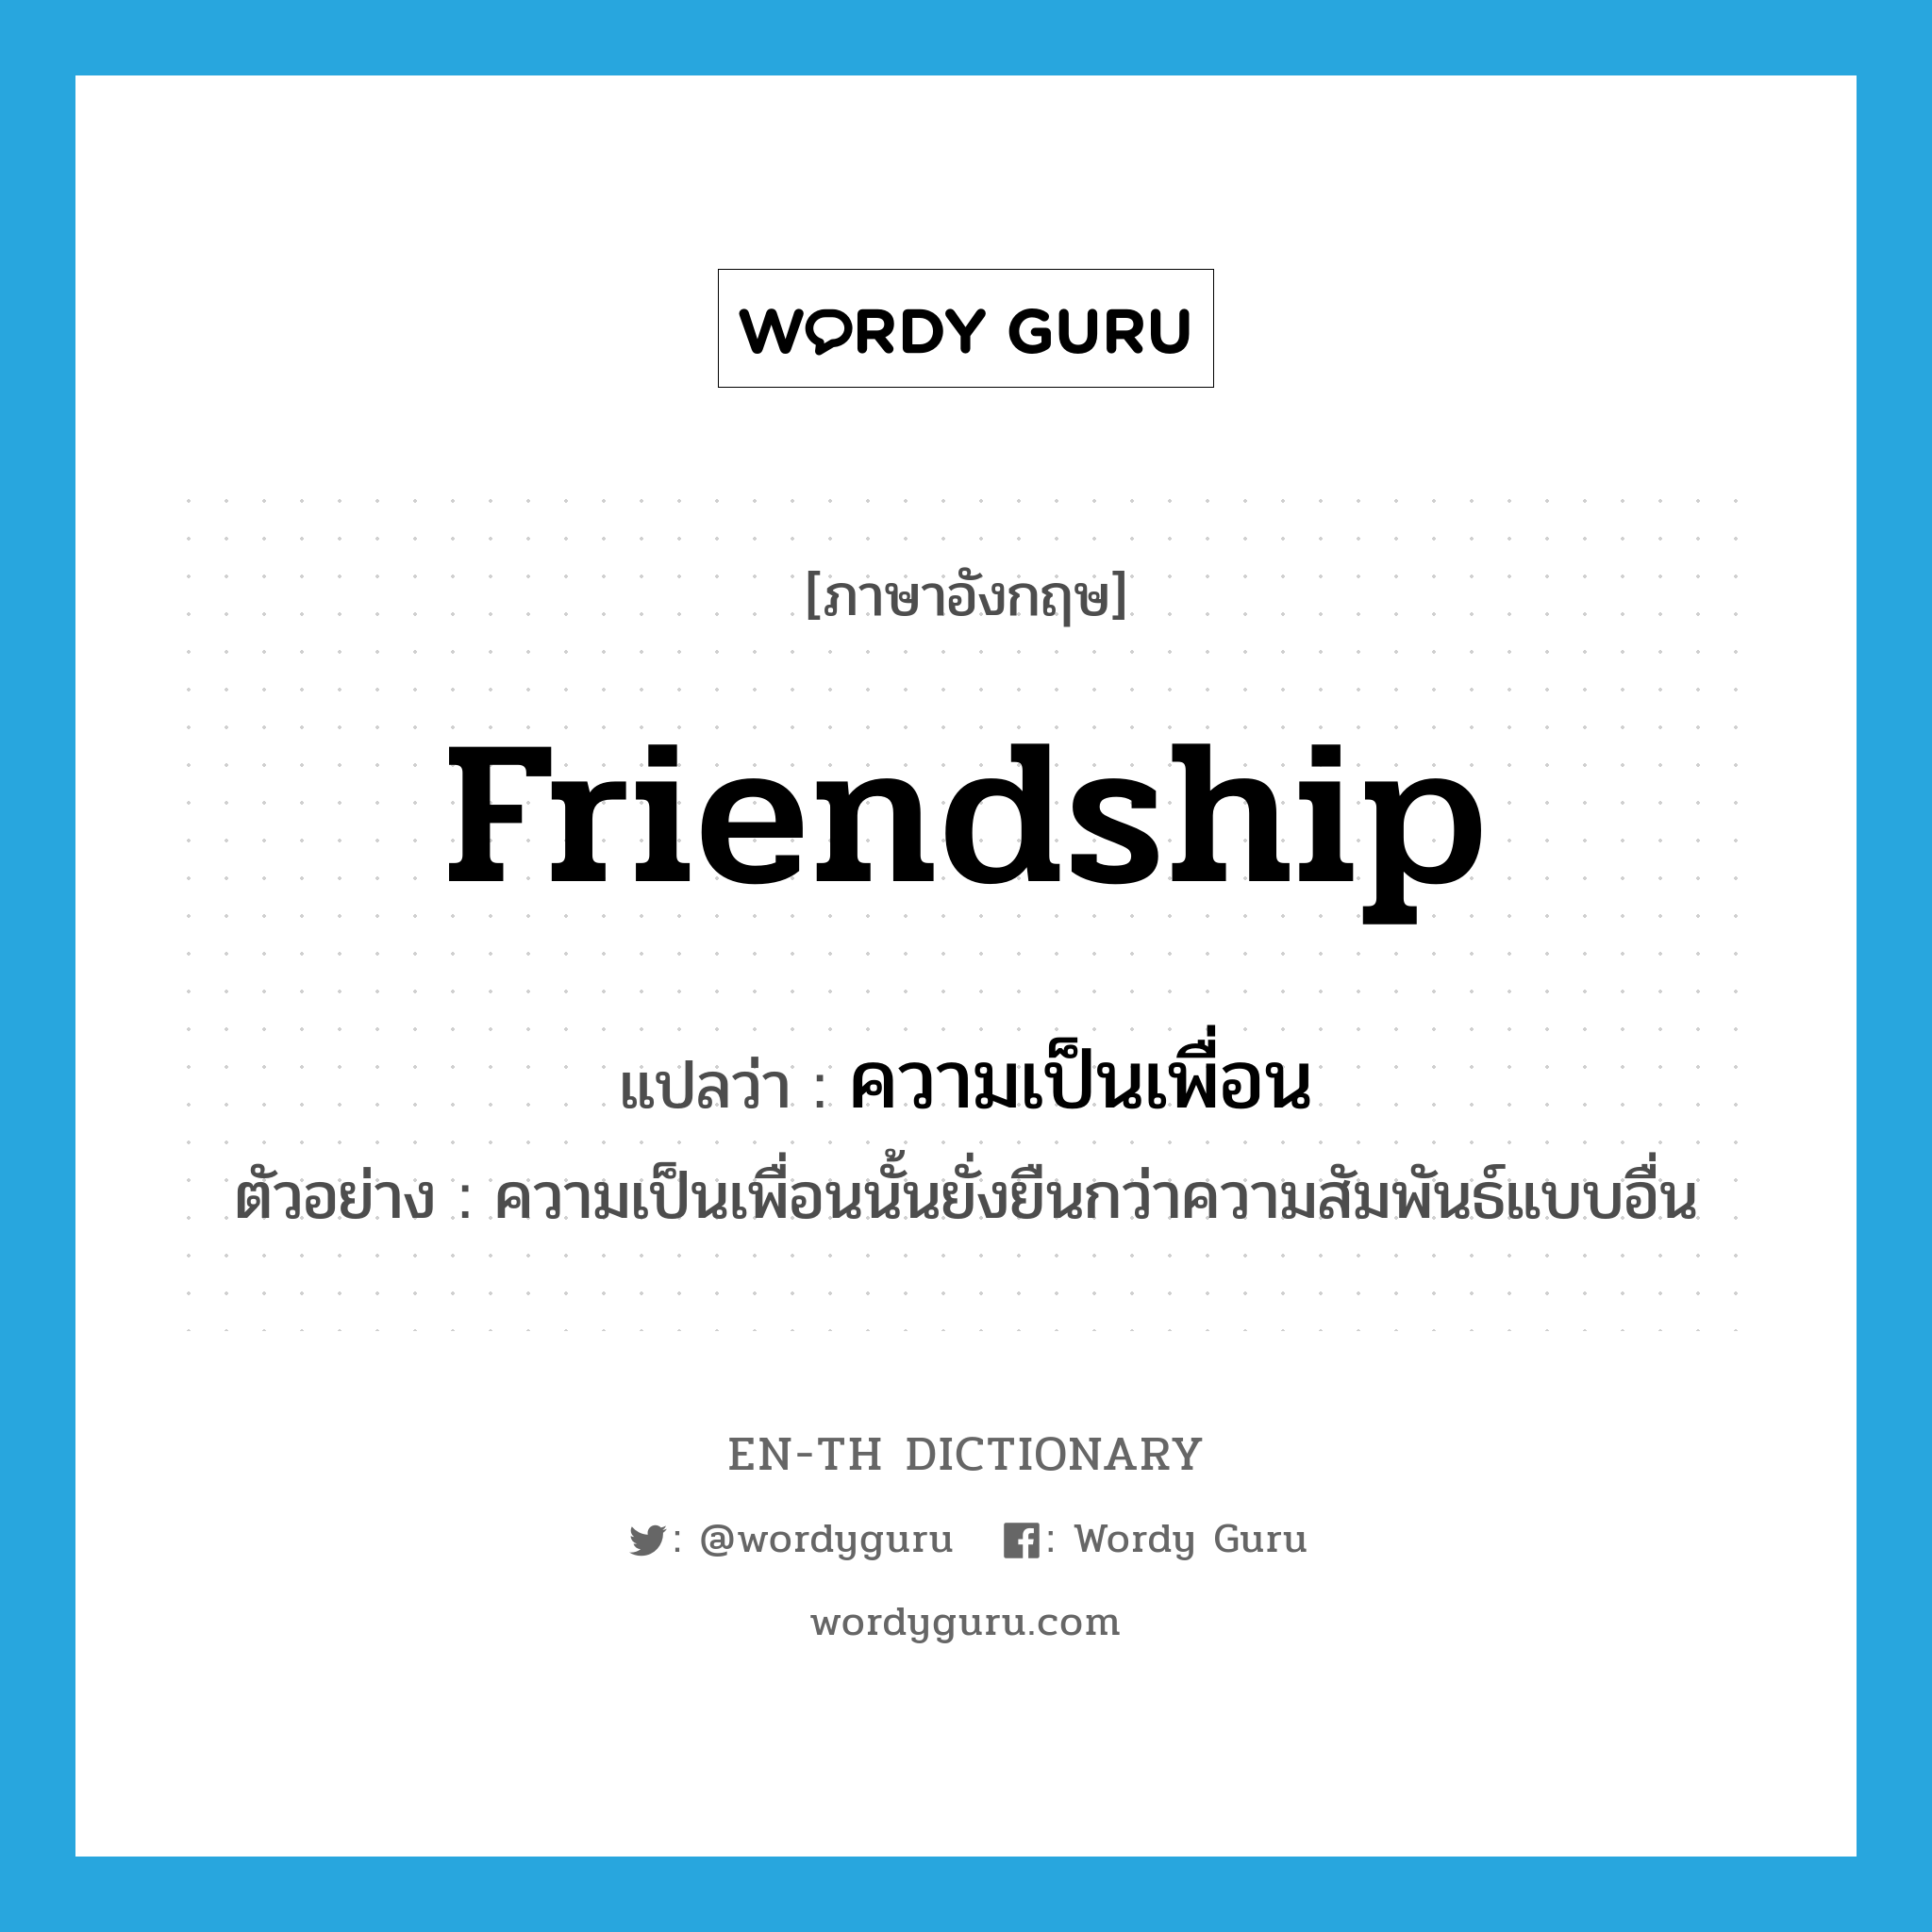 ความเป็นเพื่อน ภาษาอังกฤษ?, คำศัพท์ภาษาอังกฤษ ความเป็นเพื่อน แปลว่า friendship ประเภท N ตัวอย่าง ความเป็นเพื่อนนั้นยั่งยืนกว่าความสัมพันธ์แบบอื่น หมวด N